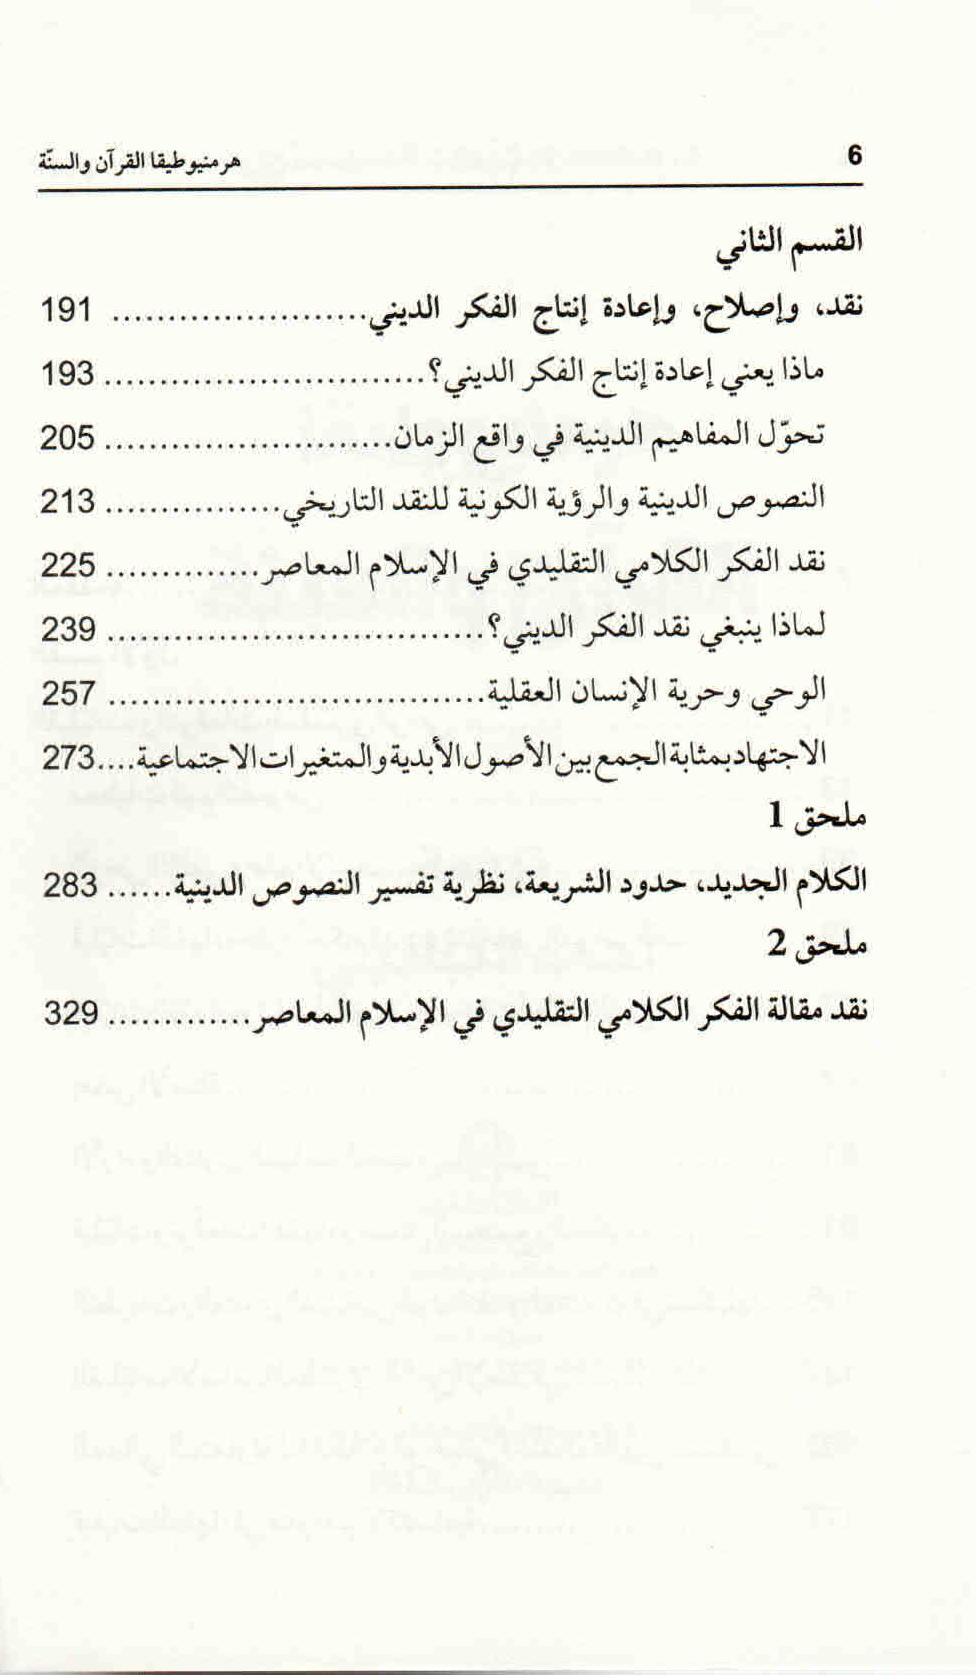  ص. 6 محتويات كتاب هرمنيوطيقا القرآن والسنة